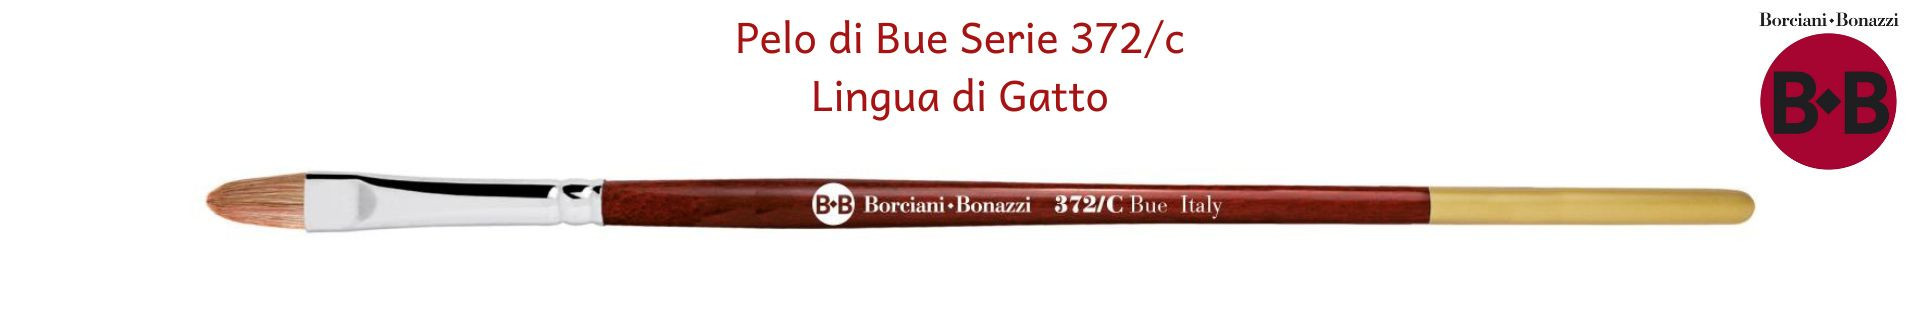 Borciani e Bonazzi Serie 372C Lingua di Gatto